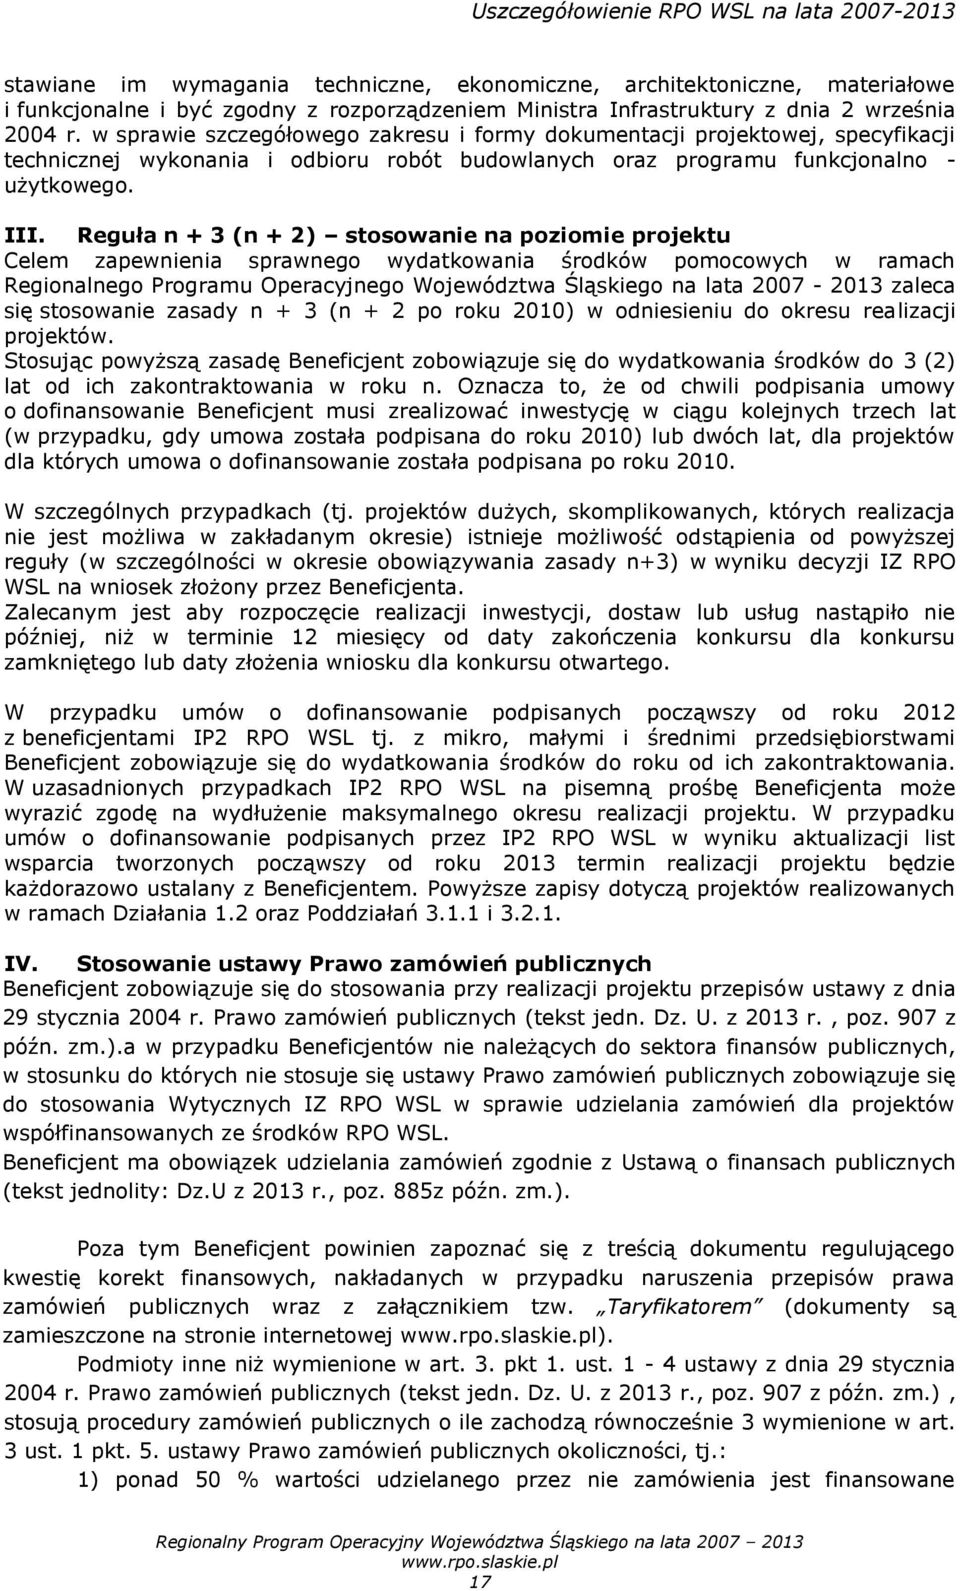 Reguła n + 3 (n + 2) stosowanie na poziomie projektu Celem zapewnienia sprawnego wydatkowania środków pomocowych w ramach Regionalnego Programu Operacyjnego Województwa Śląskiego na lata 2007-2013